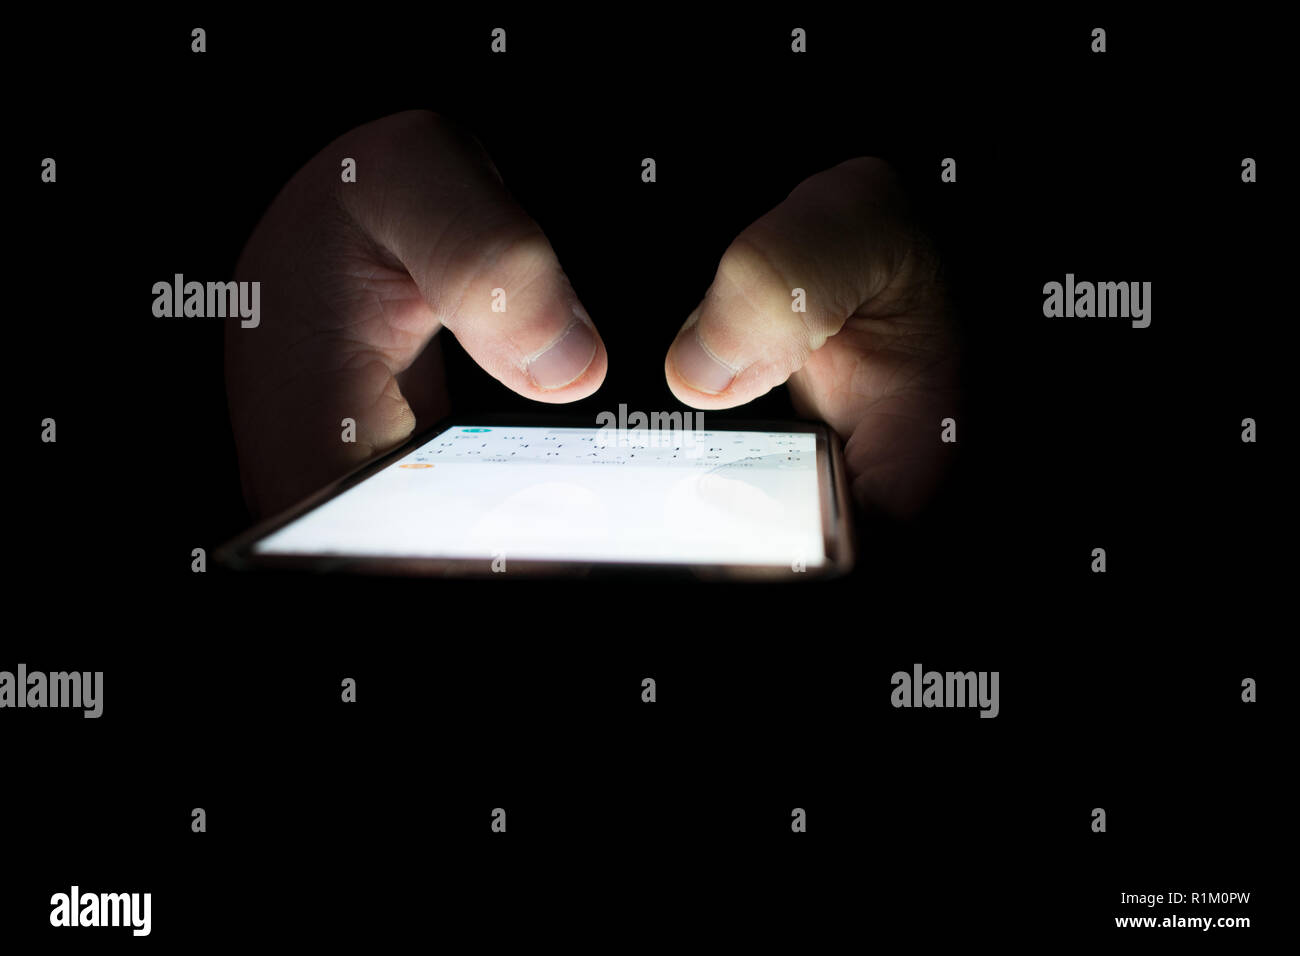 Dedos tocando la pantalla del smartphone con la luz apagada. Foto de stock